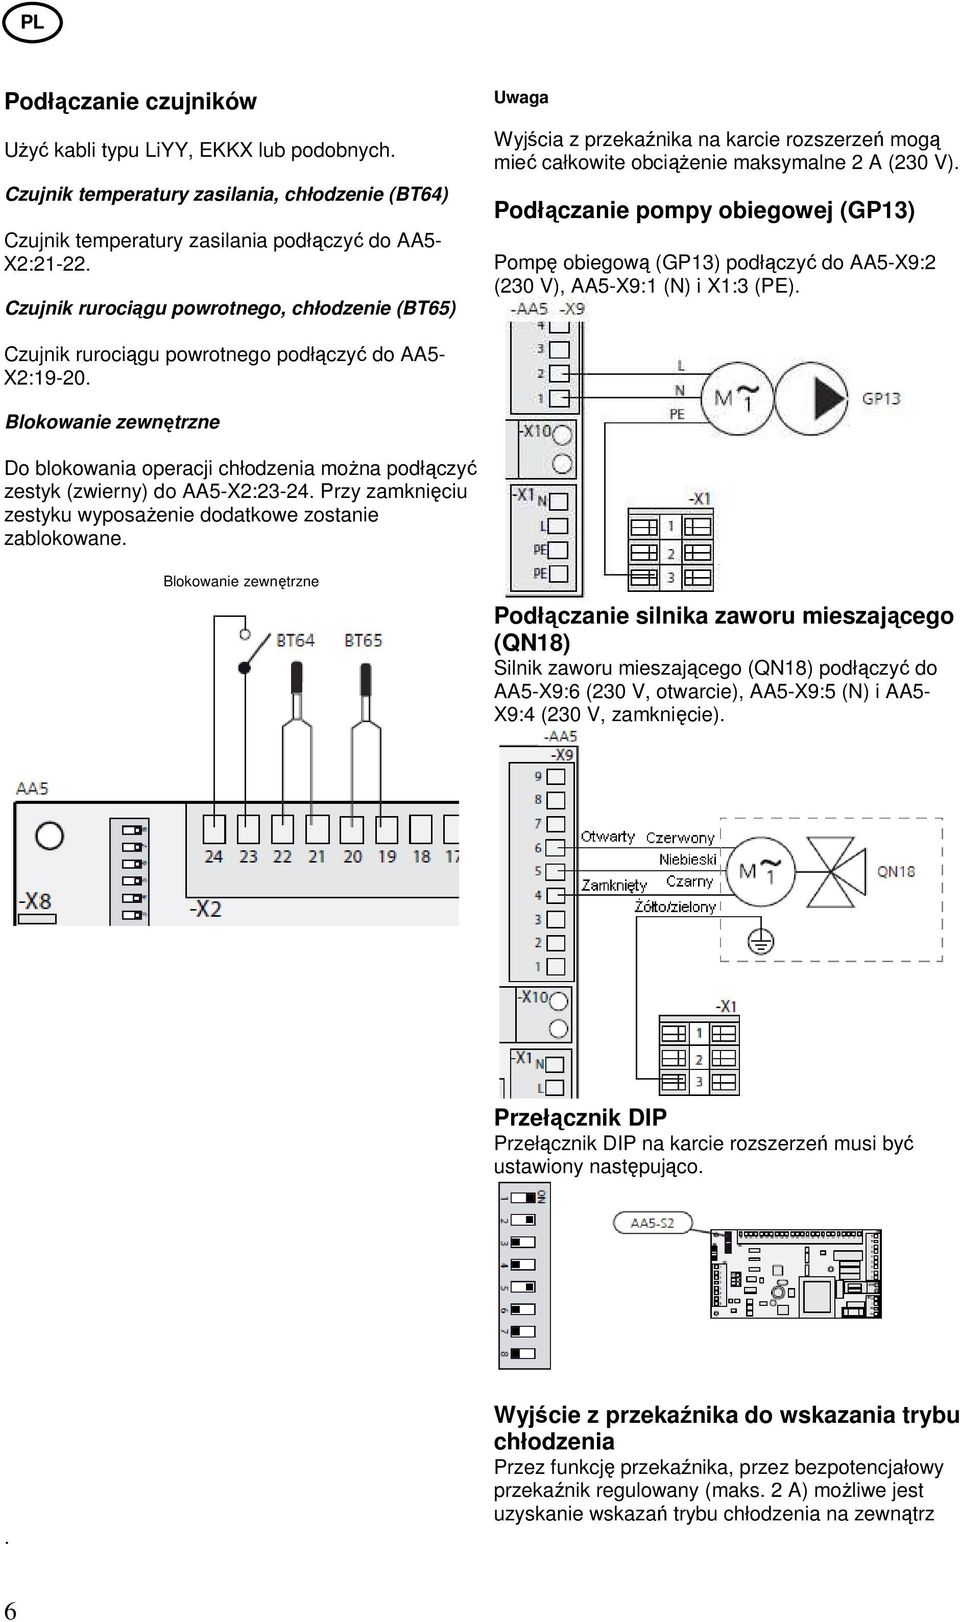 Podłączanie pompy obiegowej (GP13) Pompę obiegową (GP13) podłączyć do AA5-X9:2 (230 V), AA5-X9:1 (N) i X1:3 (PE). Czujnik rurociągu powrotnego podłączyć do AA5- X2:19-20.